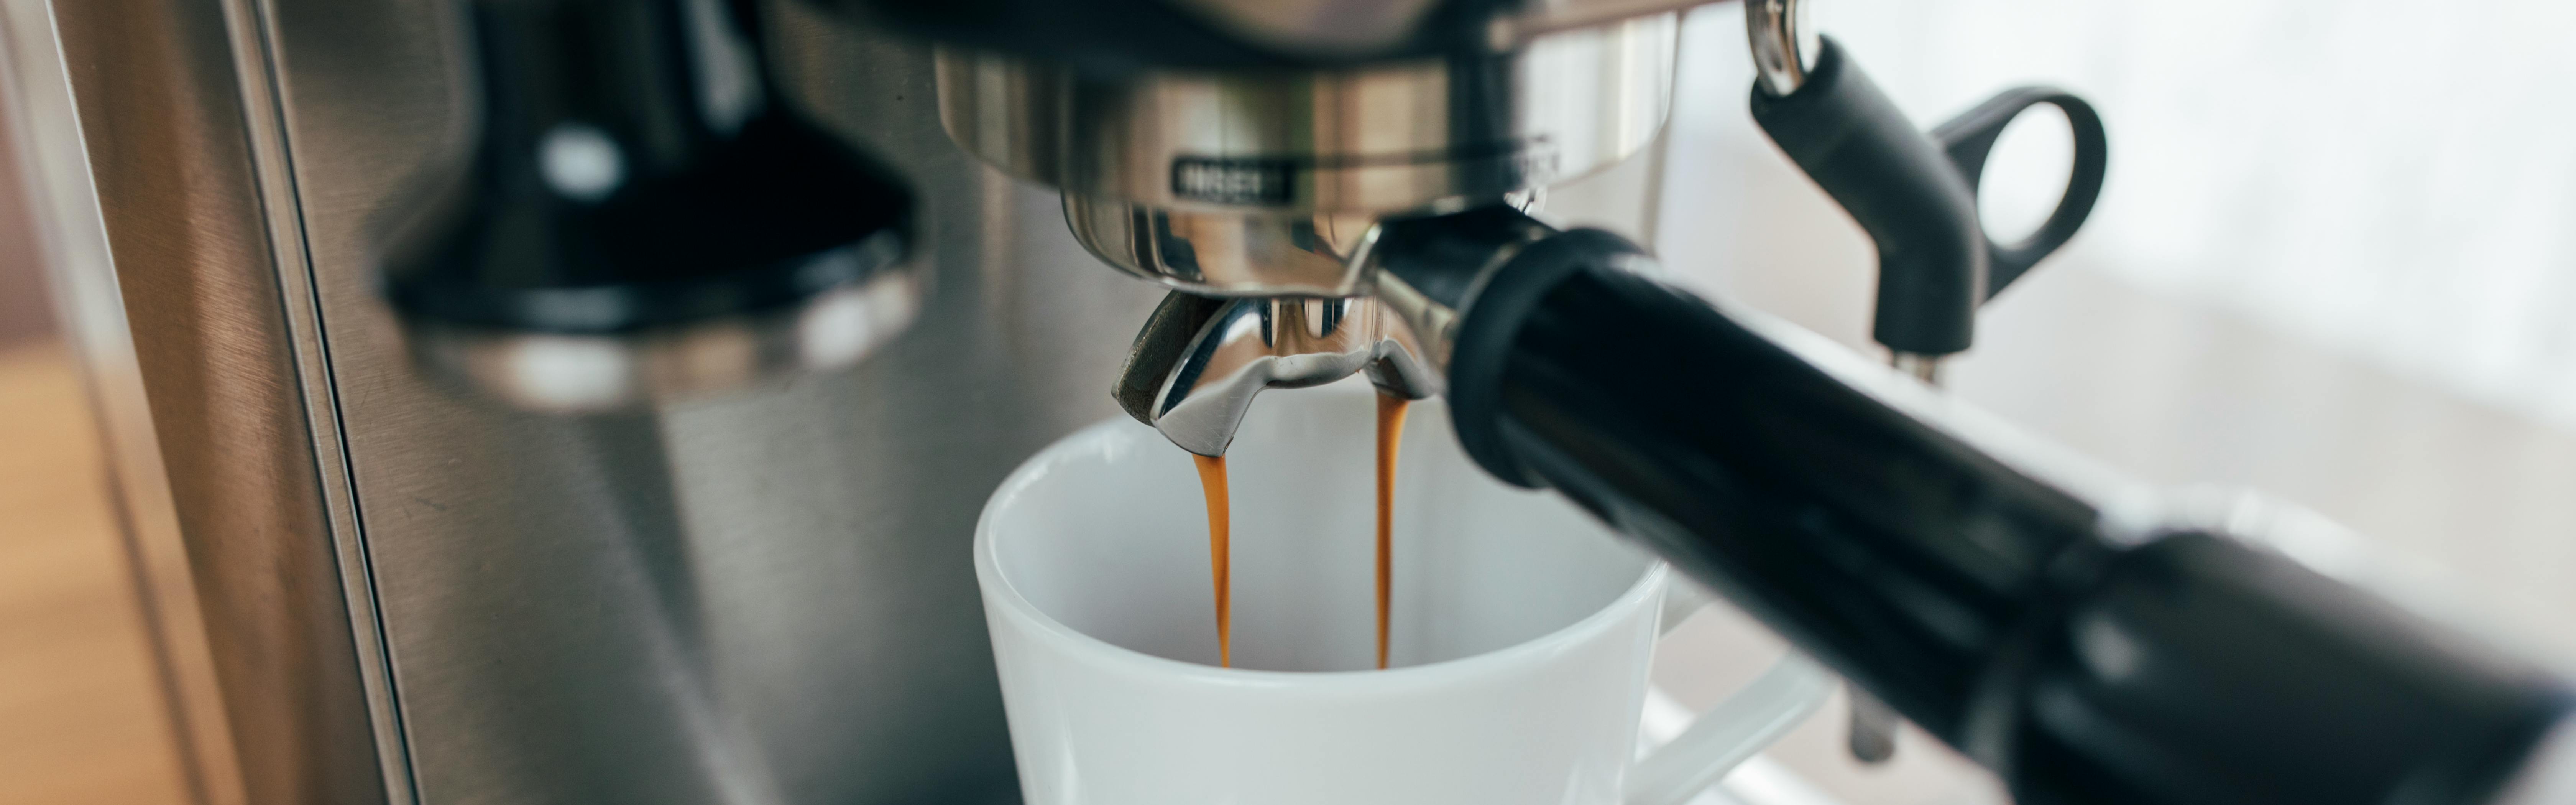 A shot pours from a prosumer espresso machine into a white ceramic mug.